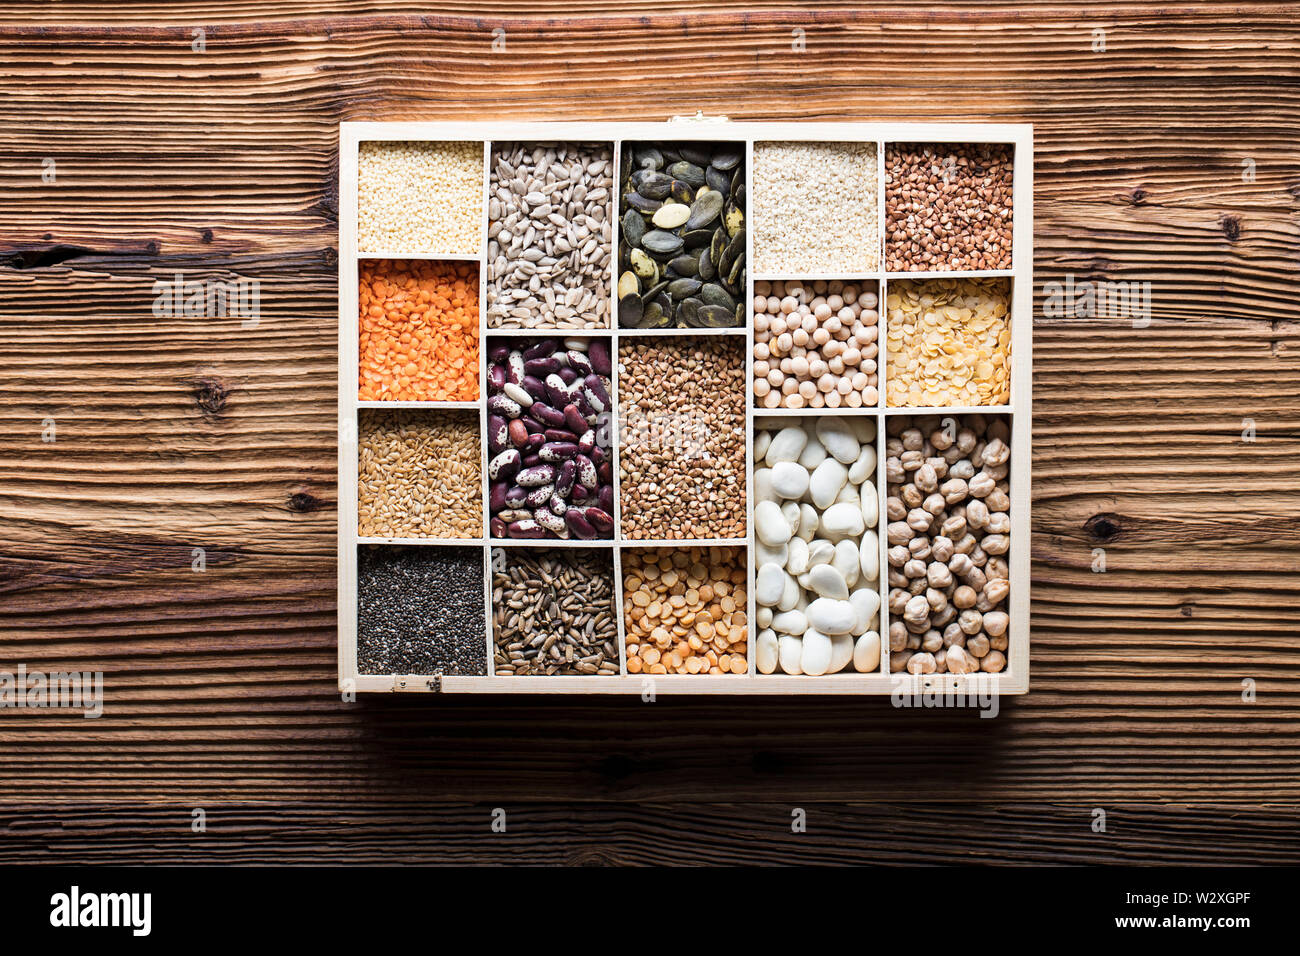 Gesunde Ernährung und Diät-Thema. Linsen, Erbsen, Bohnen, Protein Essen in Schüsseln, auf einem Holztisch. Ansicht von oben. Stockfoto